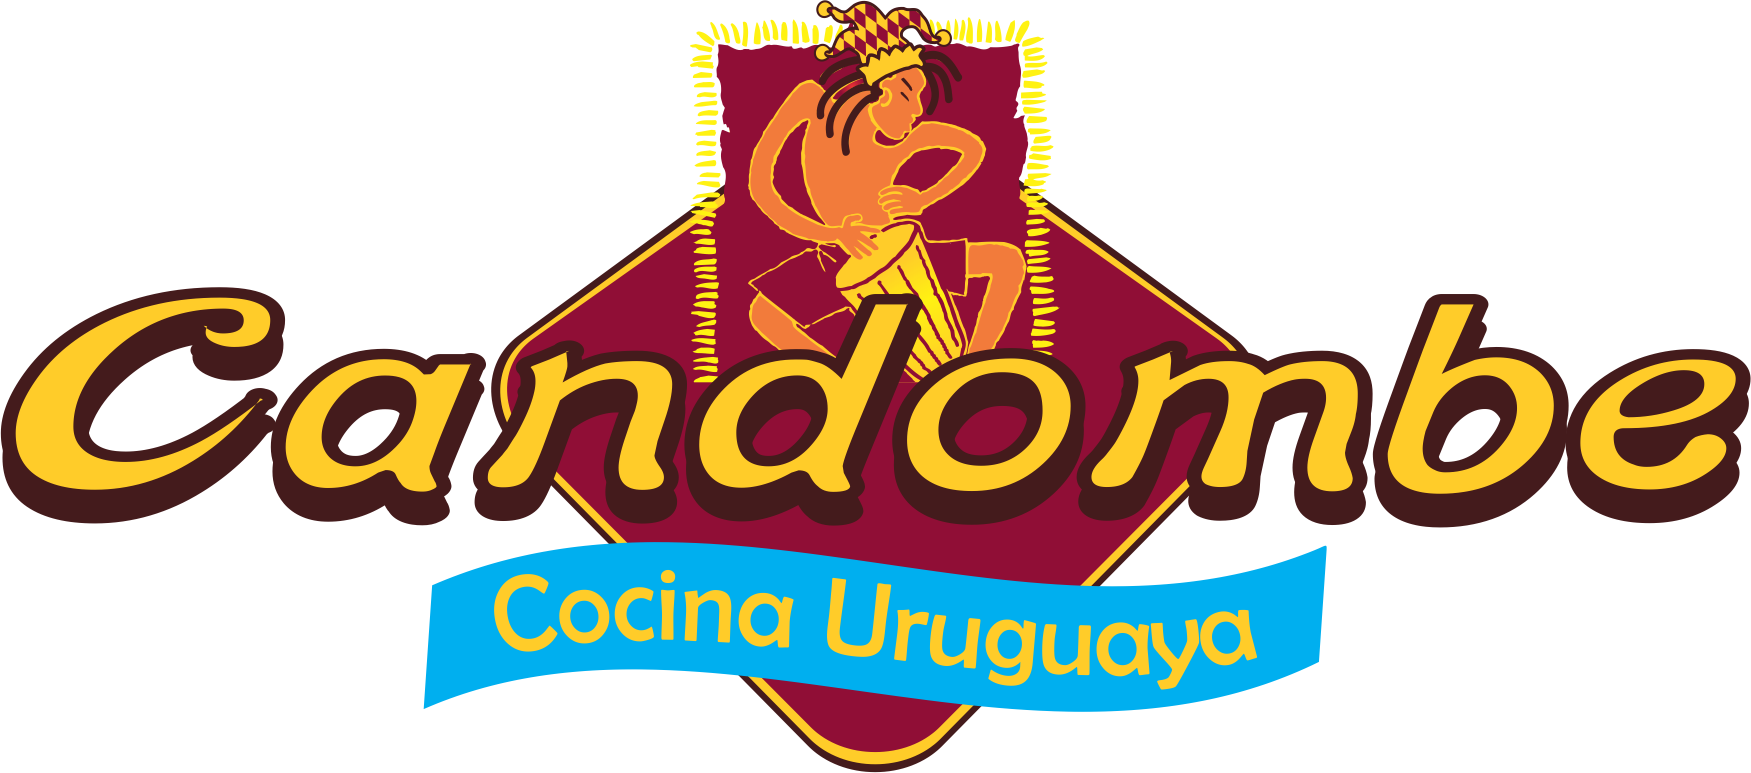 Restaurante especializado en cocina Uruguaya, ven y prueba nuestros deliciosos platillos ¡Te van a encantar! síguenos en Facebook http://t.co/p57X1vZARw